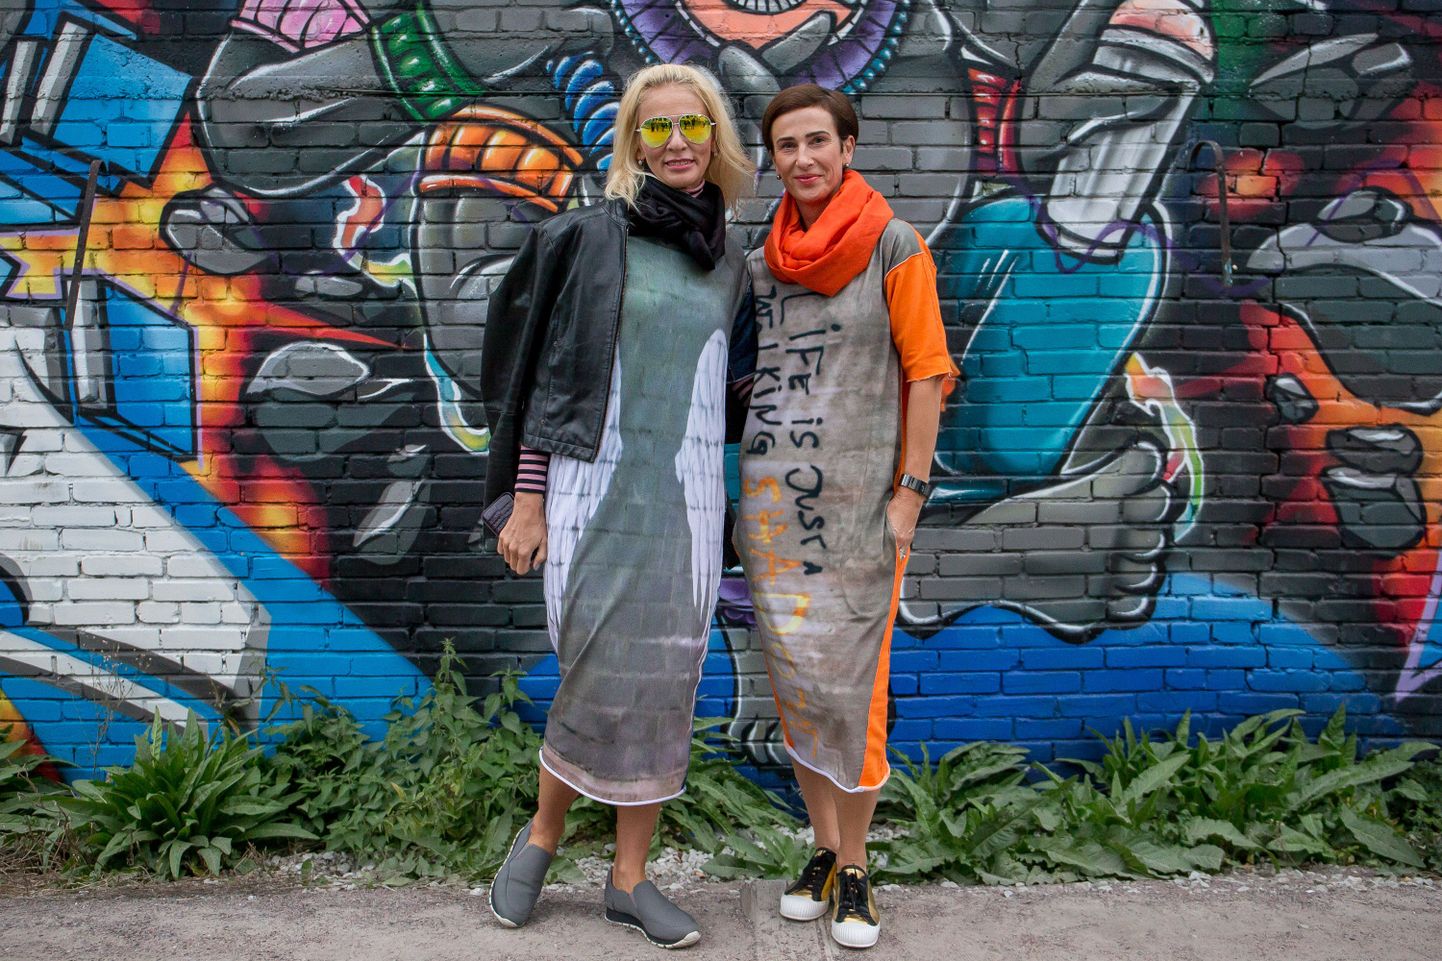 Grafitiingel ja tõupuhas tänavapoiss? Tegelikult tegusad kaunitarid  Kristina Ljadov ja Kristel Kurvits.